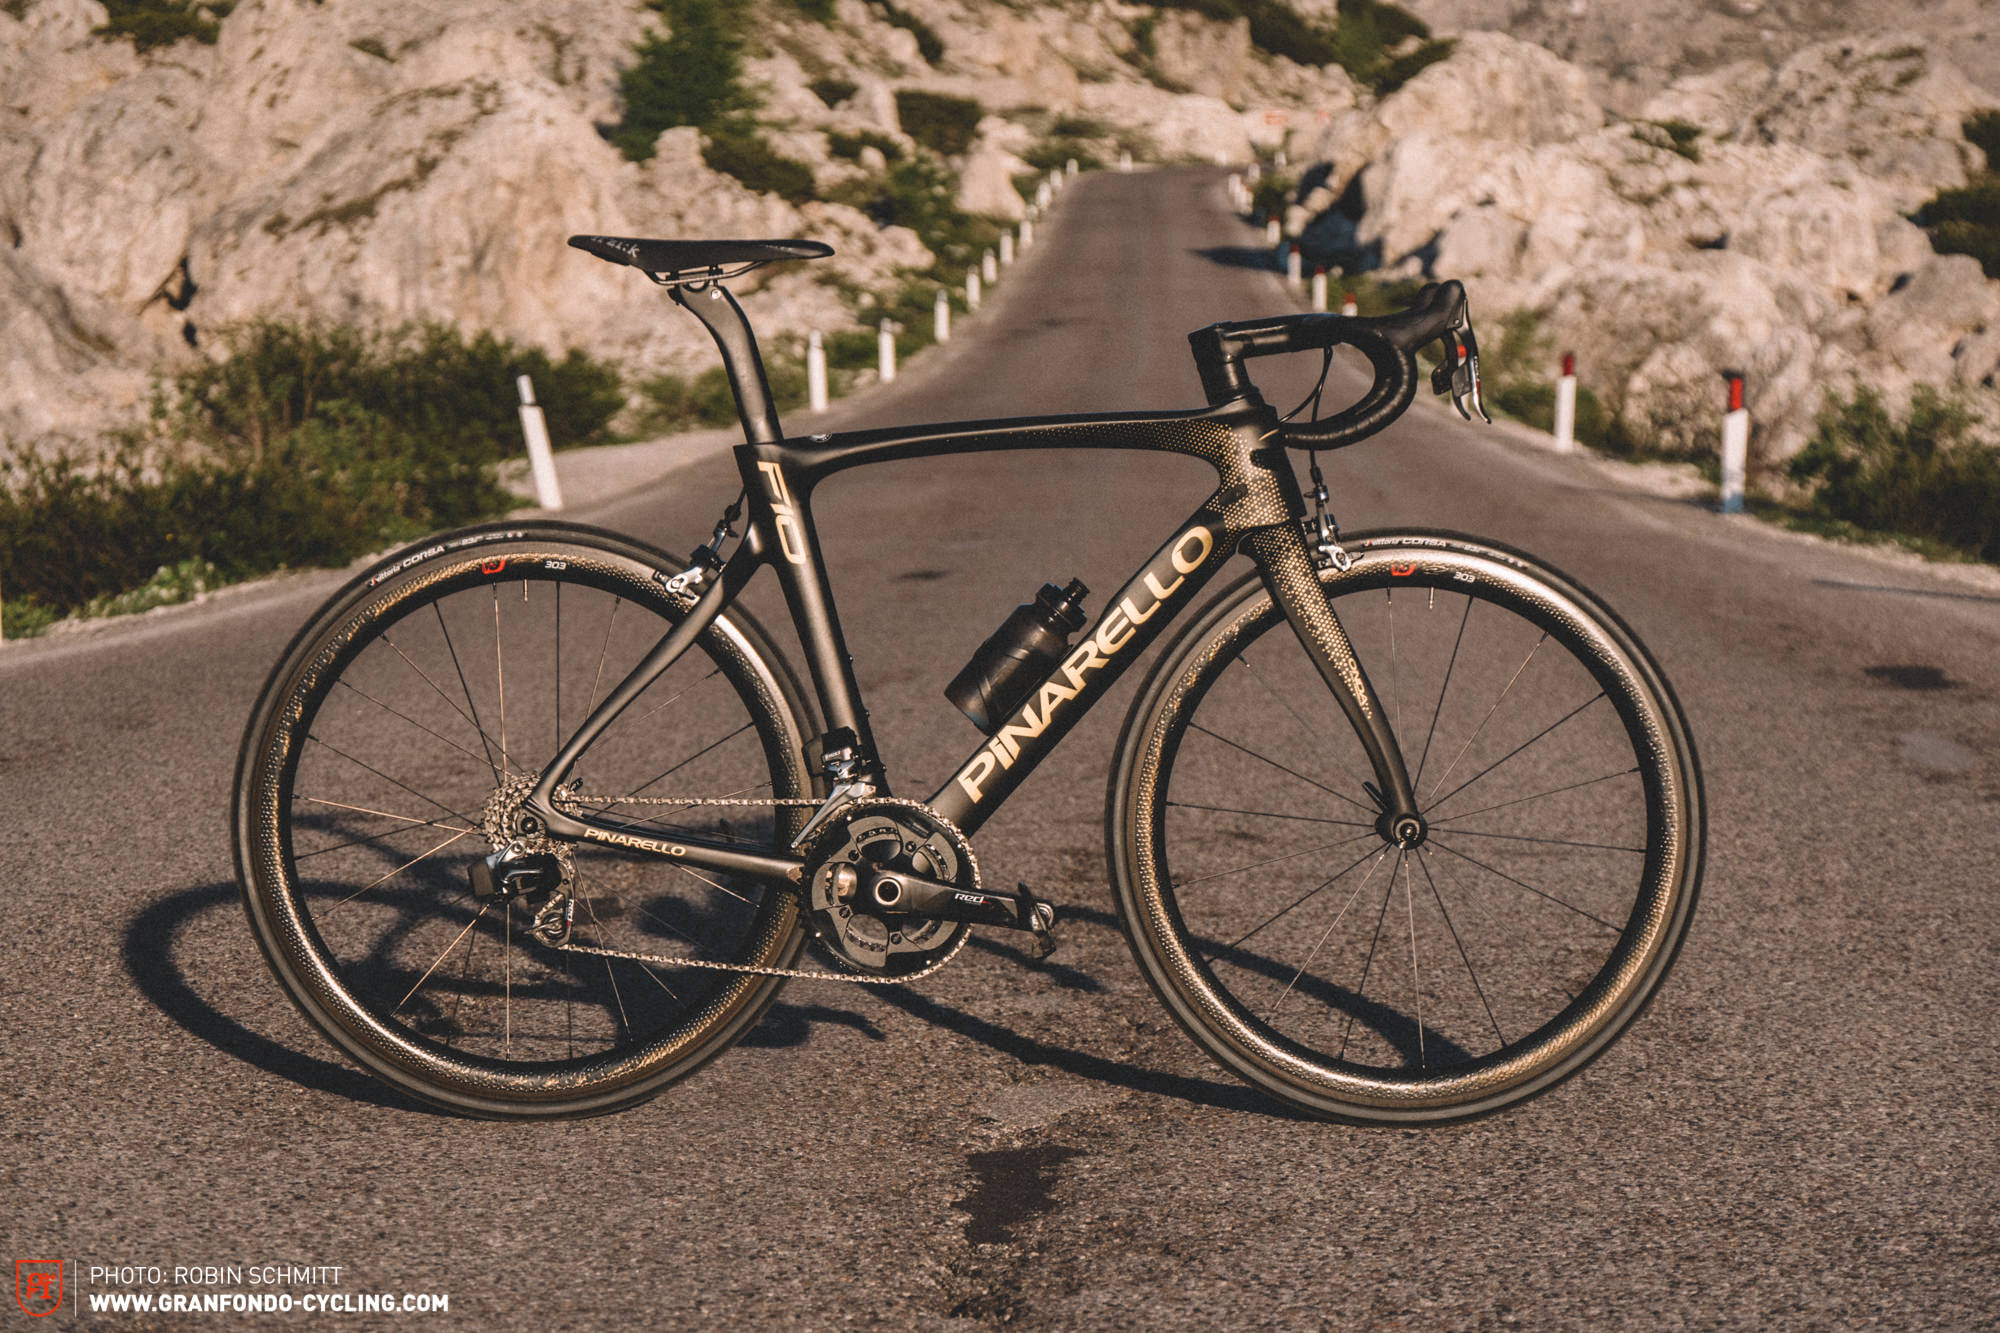 Pinarello Dogma F10 in review – „Dream Bike“